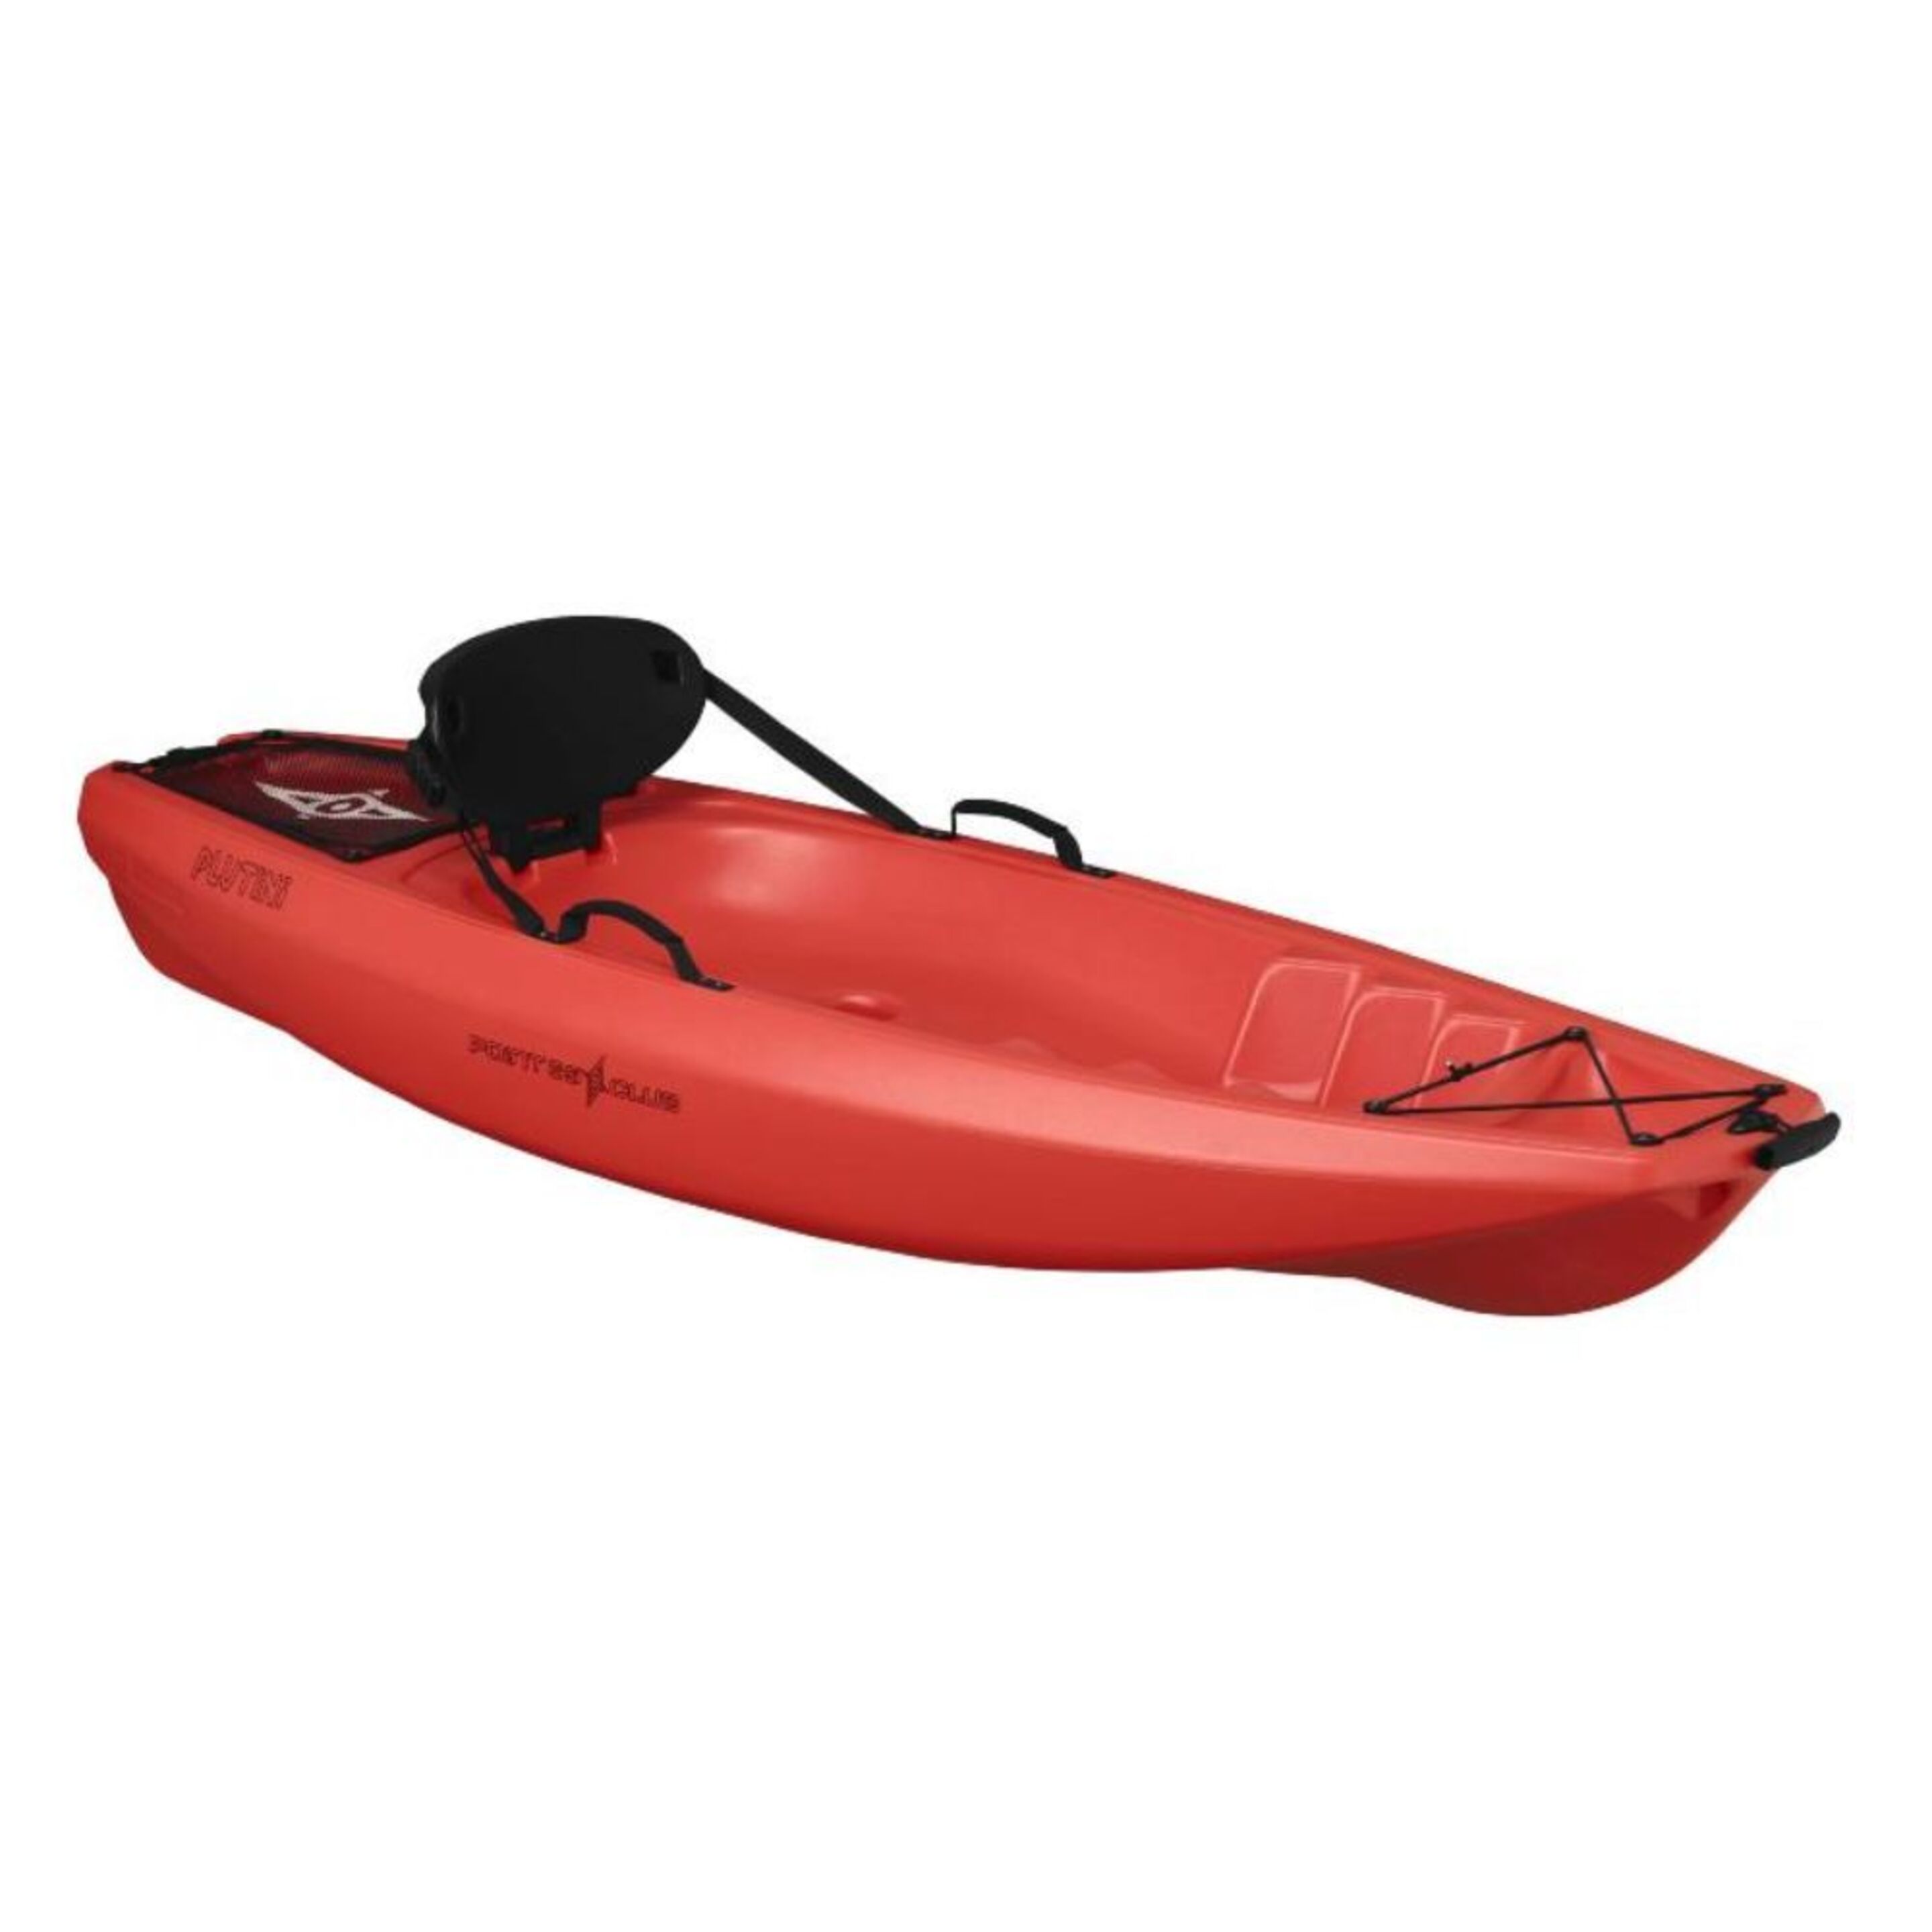 Kayak Rigido Point 65 Para Niños - Rojo  MKP